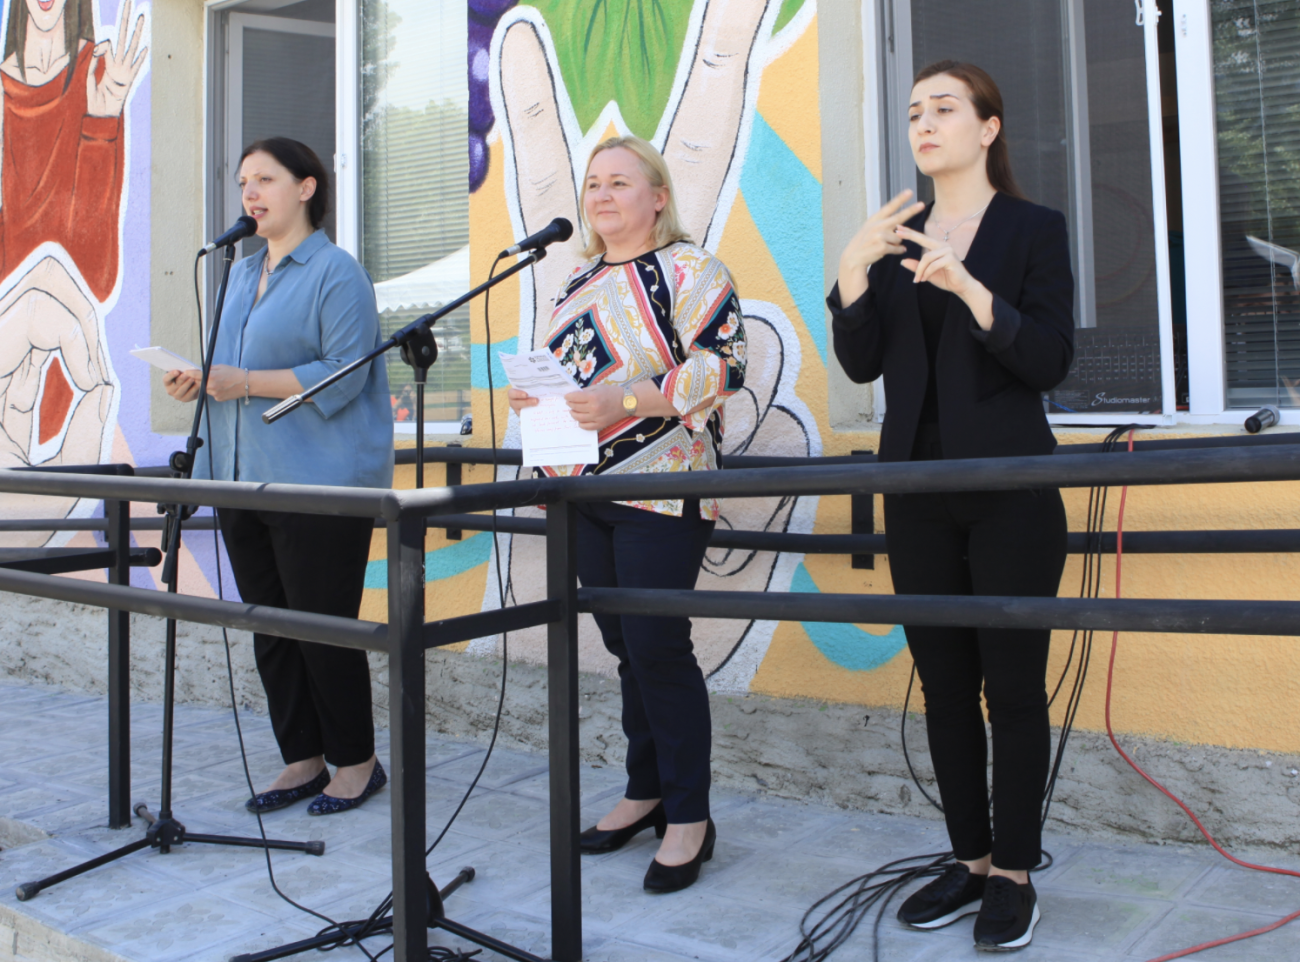 三名妇女站在一栋装饰着多种颜色的建筑物前。一头的黑衣女子正在将讲话内容翻译成手语。